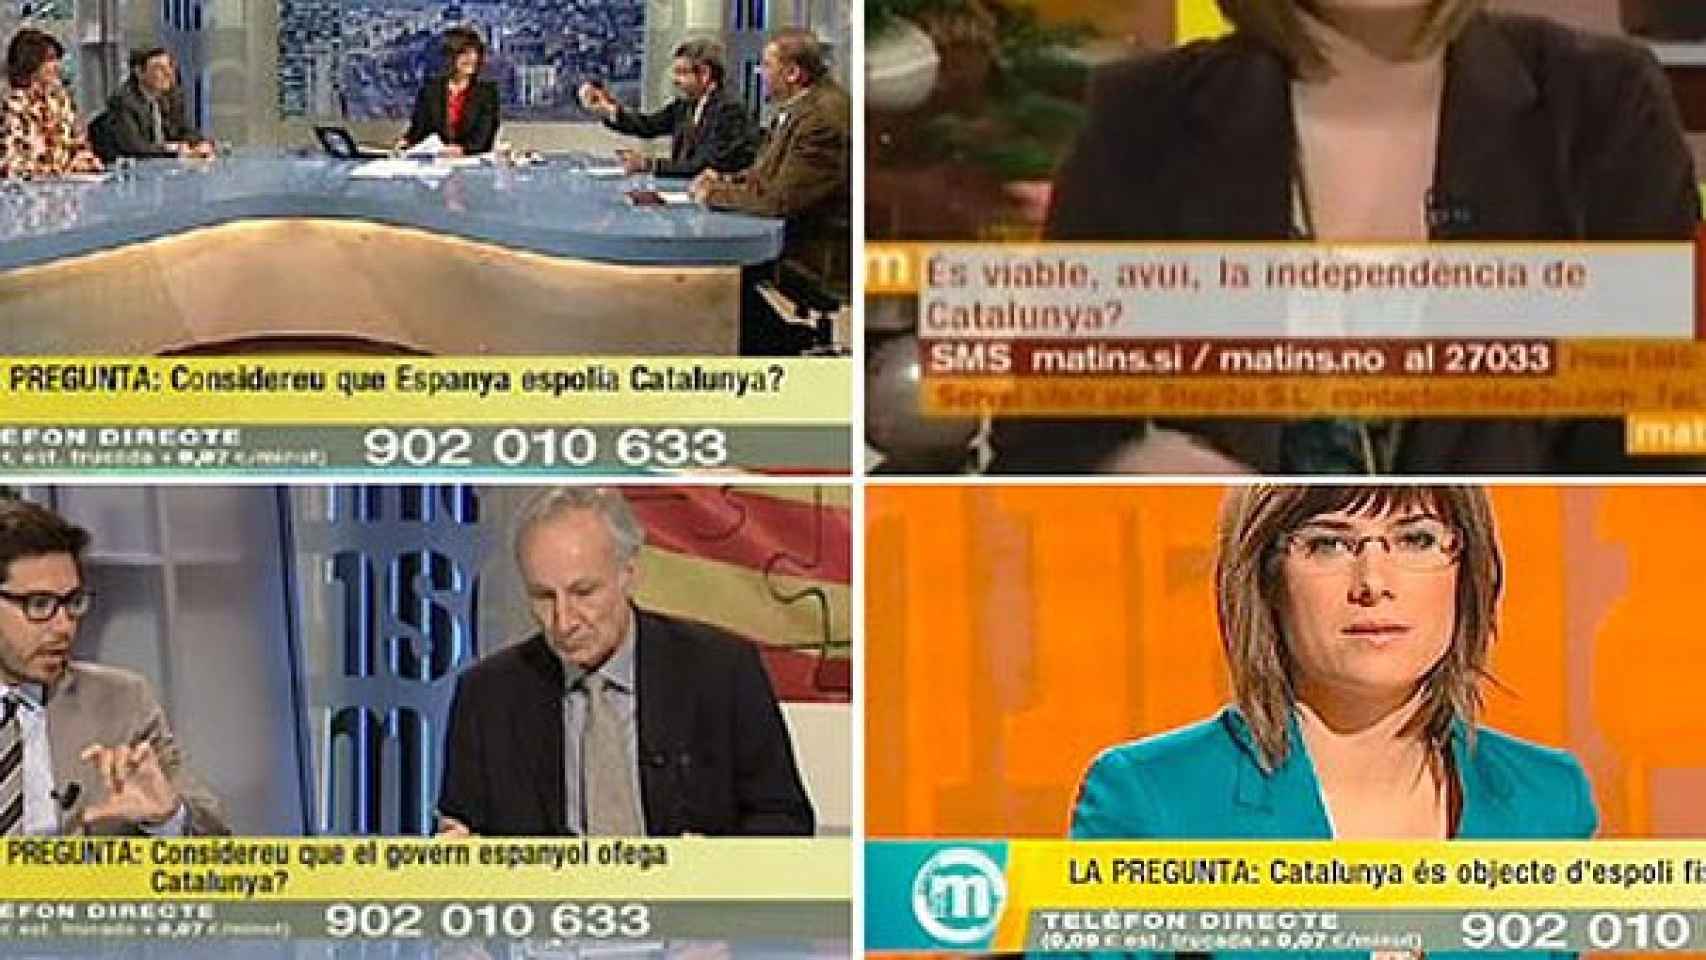 Cuatro preguntas que se plantean en 'Els Matins', el programa matutino de TV3, criticadas por su parcialidad y sectarismo